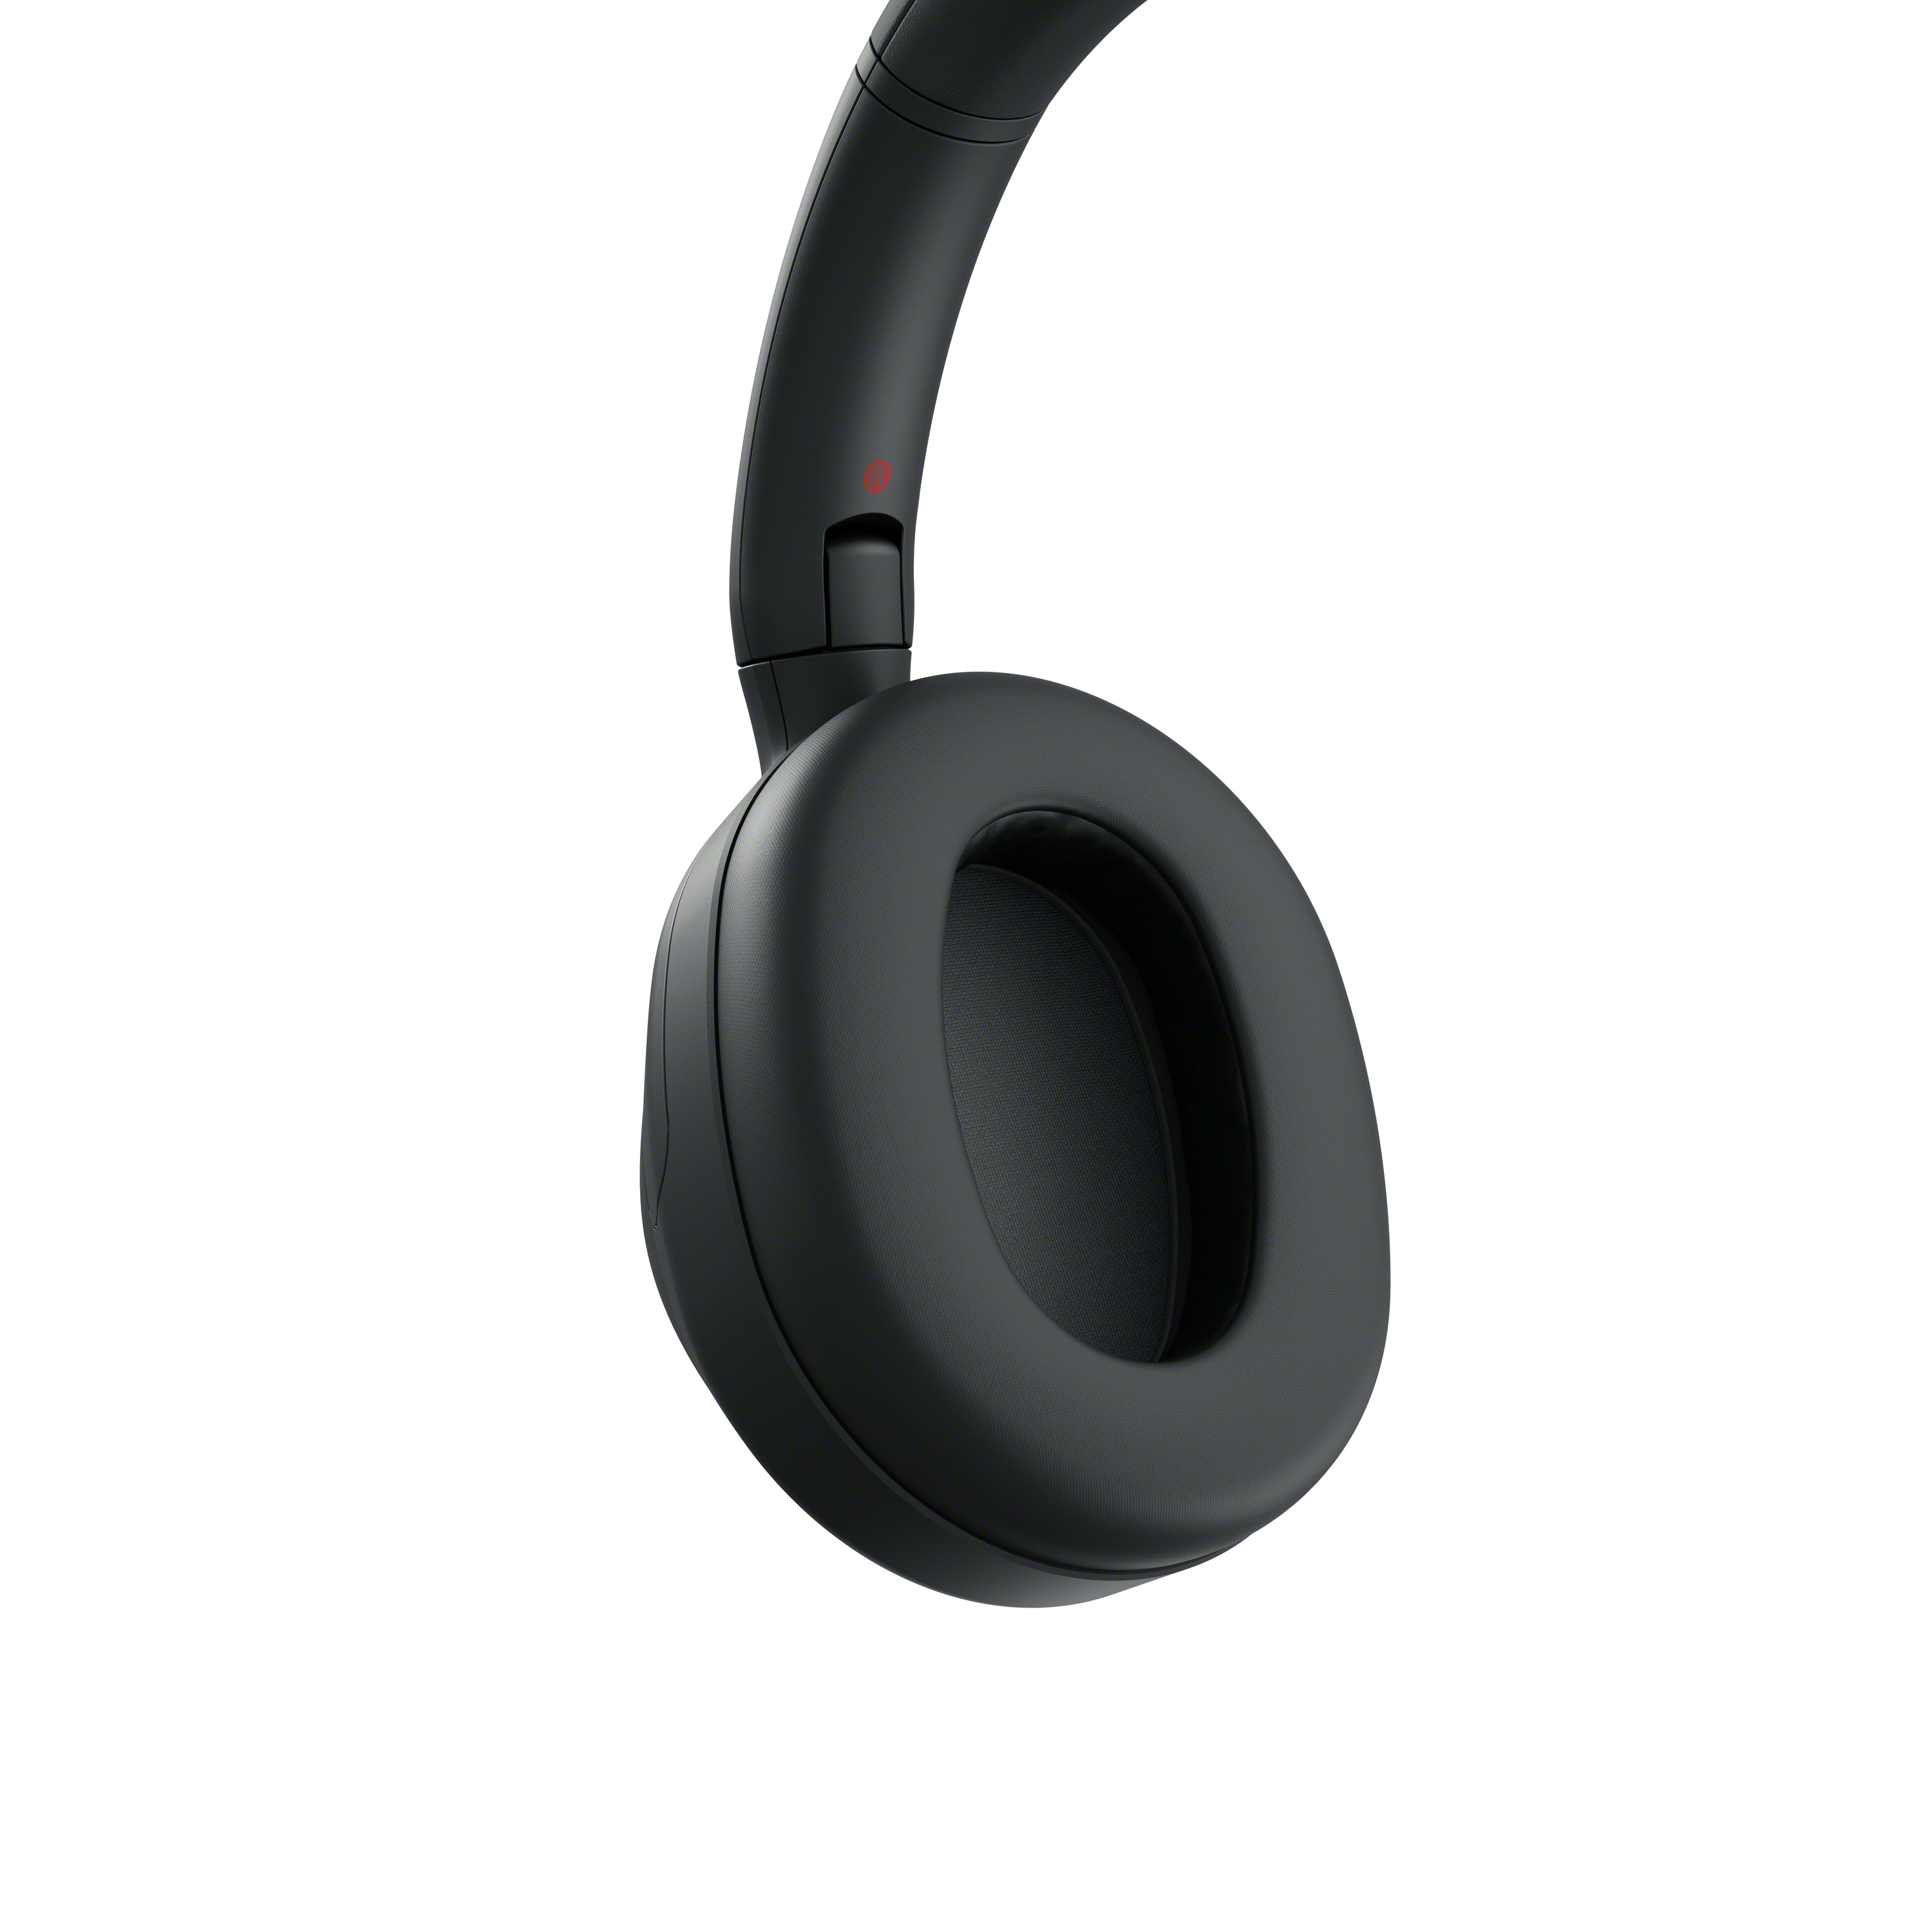 Sony ra mắt tai nghe không dây ULT WEAR mới: Phục vụ những bass-head- Ảnh 5.